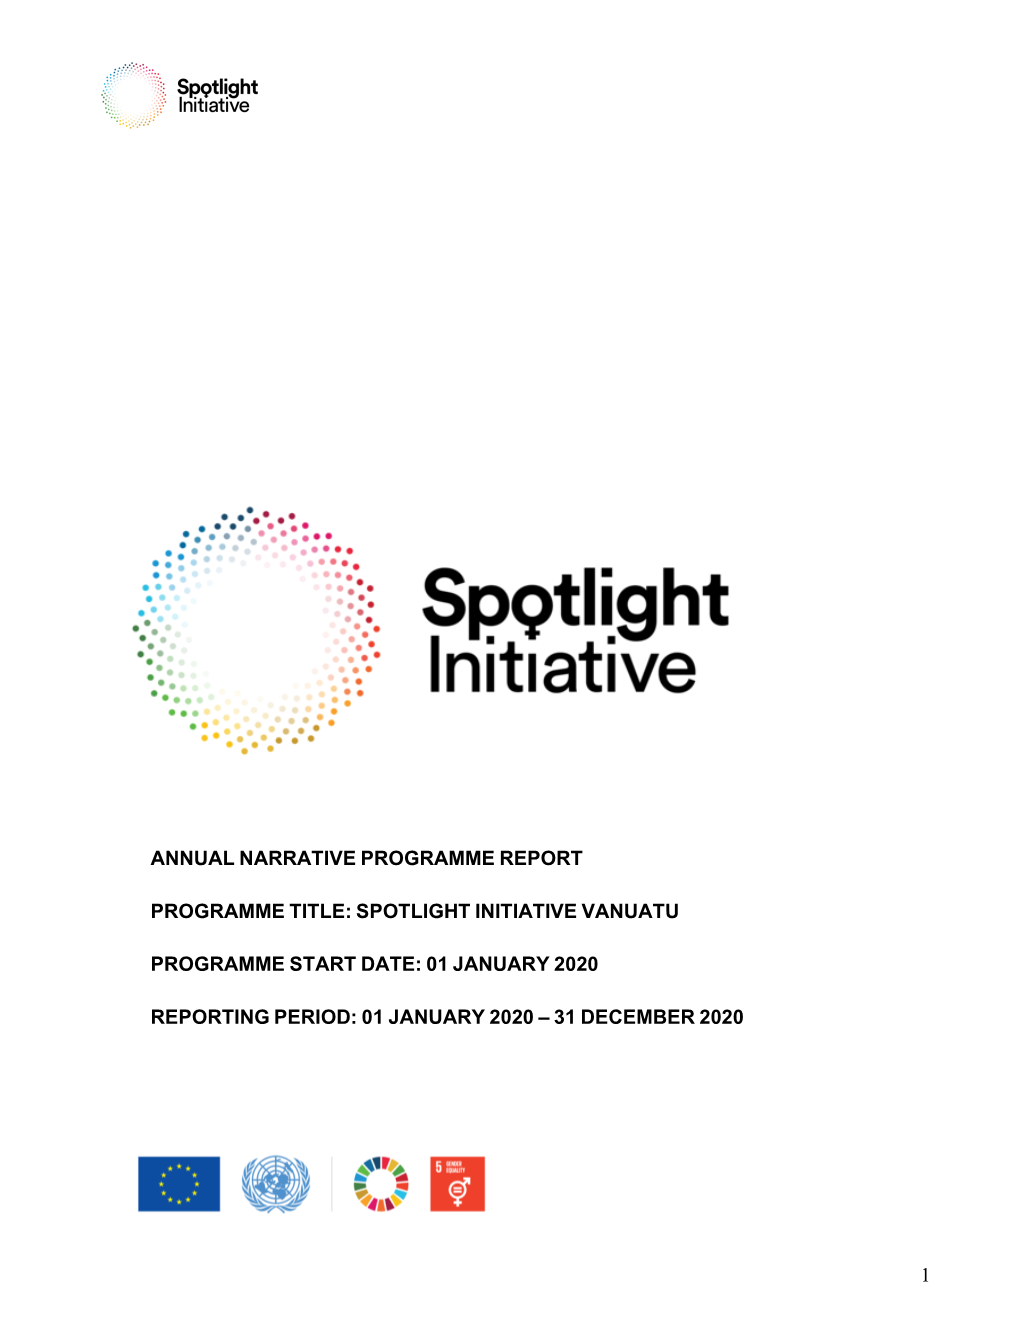 Spotlight Initiative Vanuatu Programme Start Date